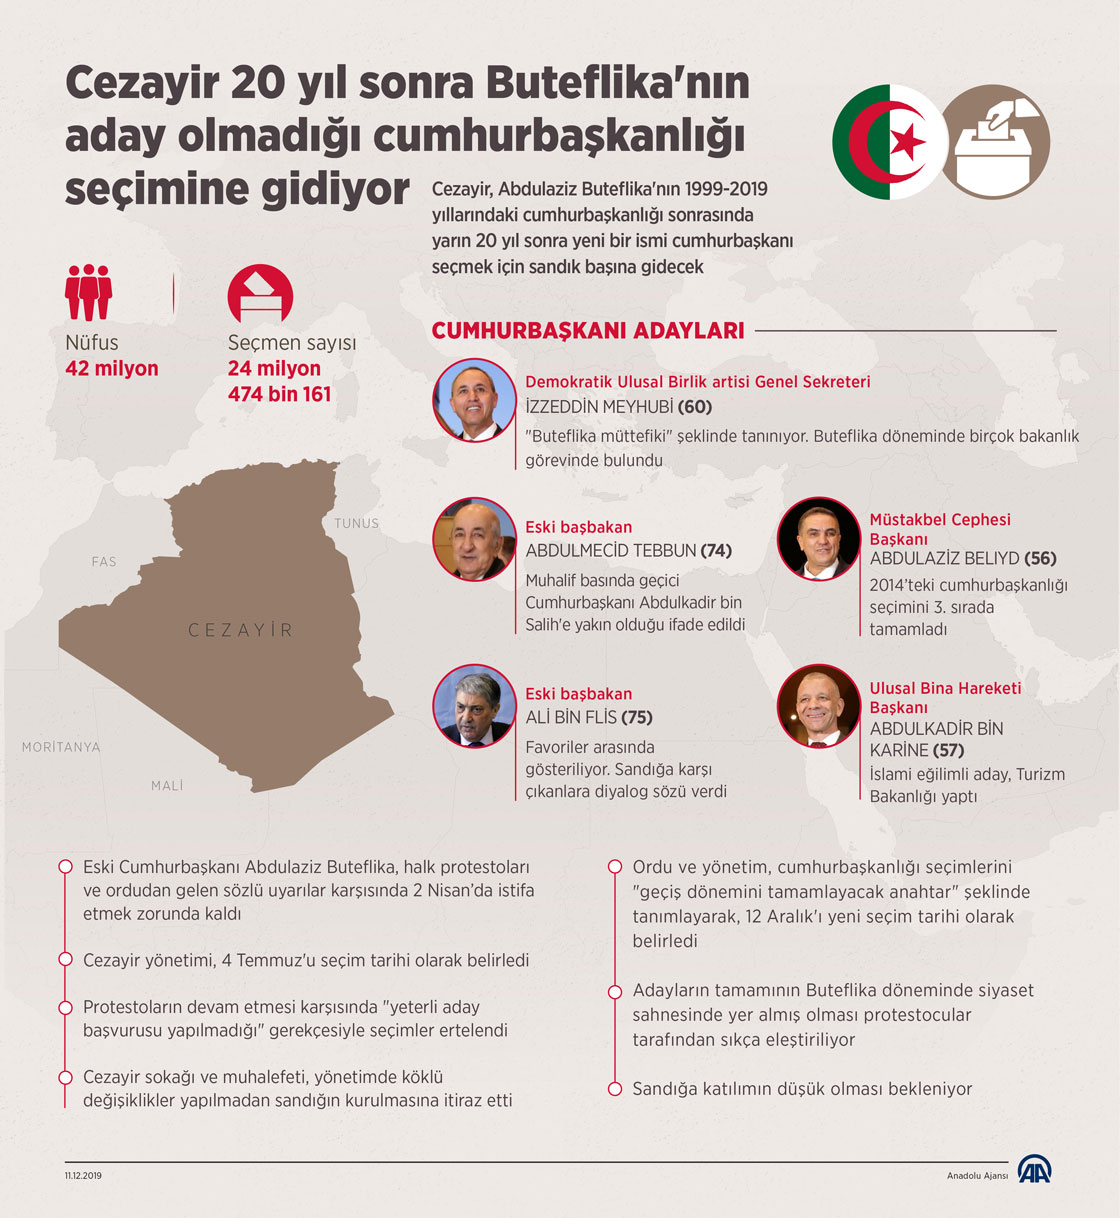 Cezayir 20 yıl sonra Buteflika'nın aday olmadığı cumhurbaşkanlığı seçimine gidiyor